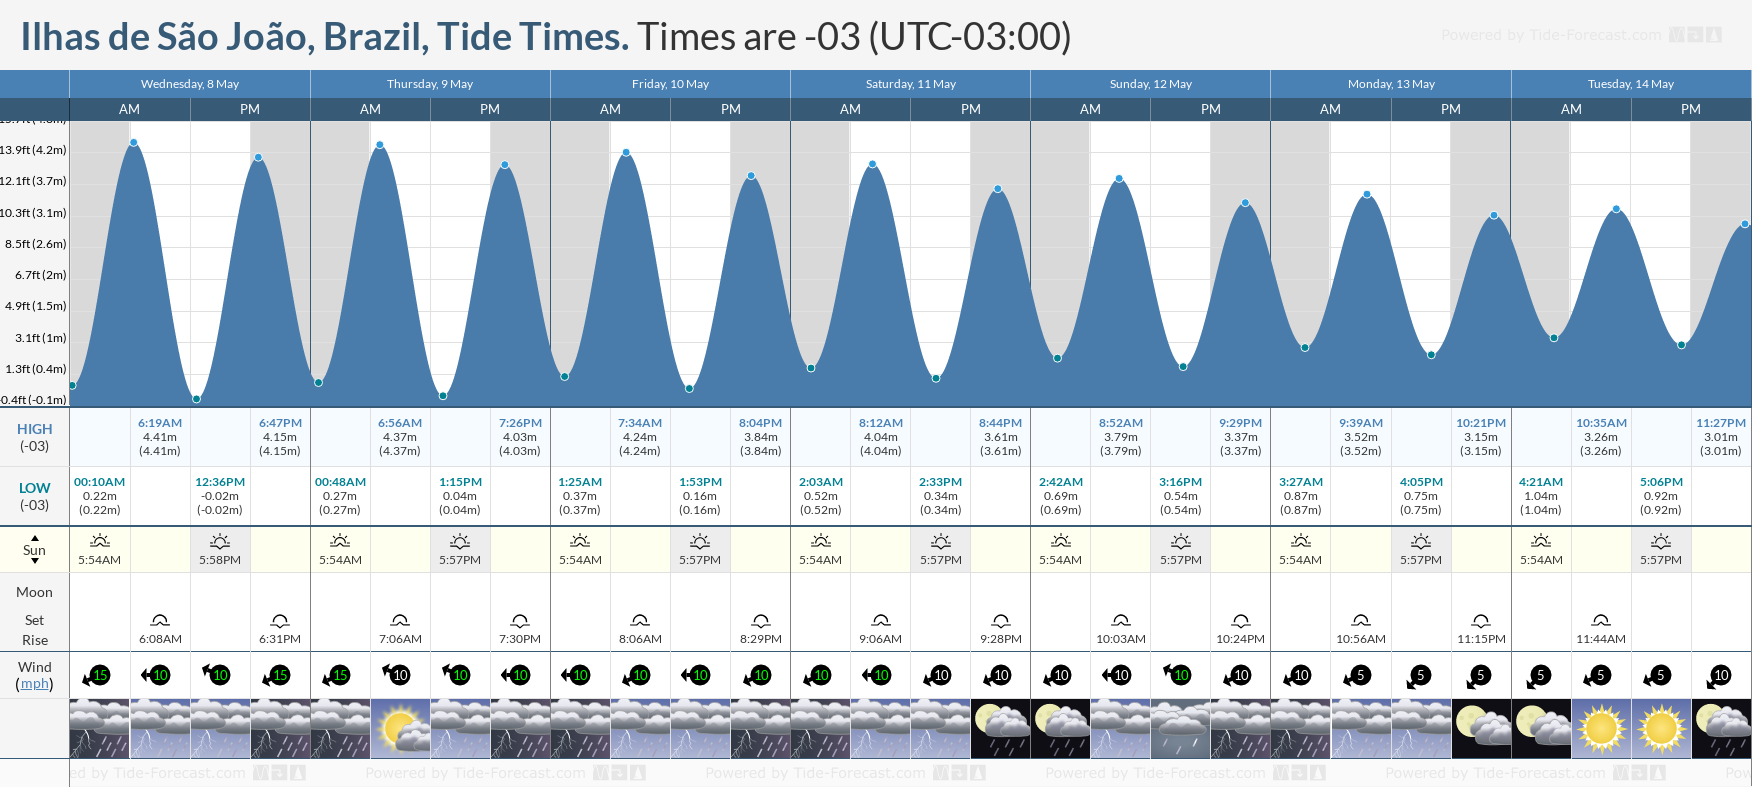 Ilhas de São João, Brazil Tide Chart including high and low tide tide times for the next 7 days